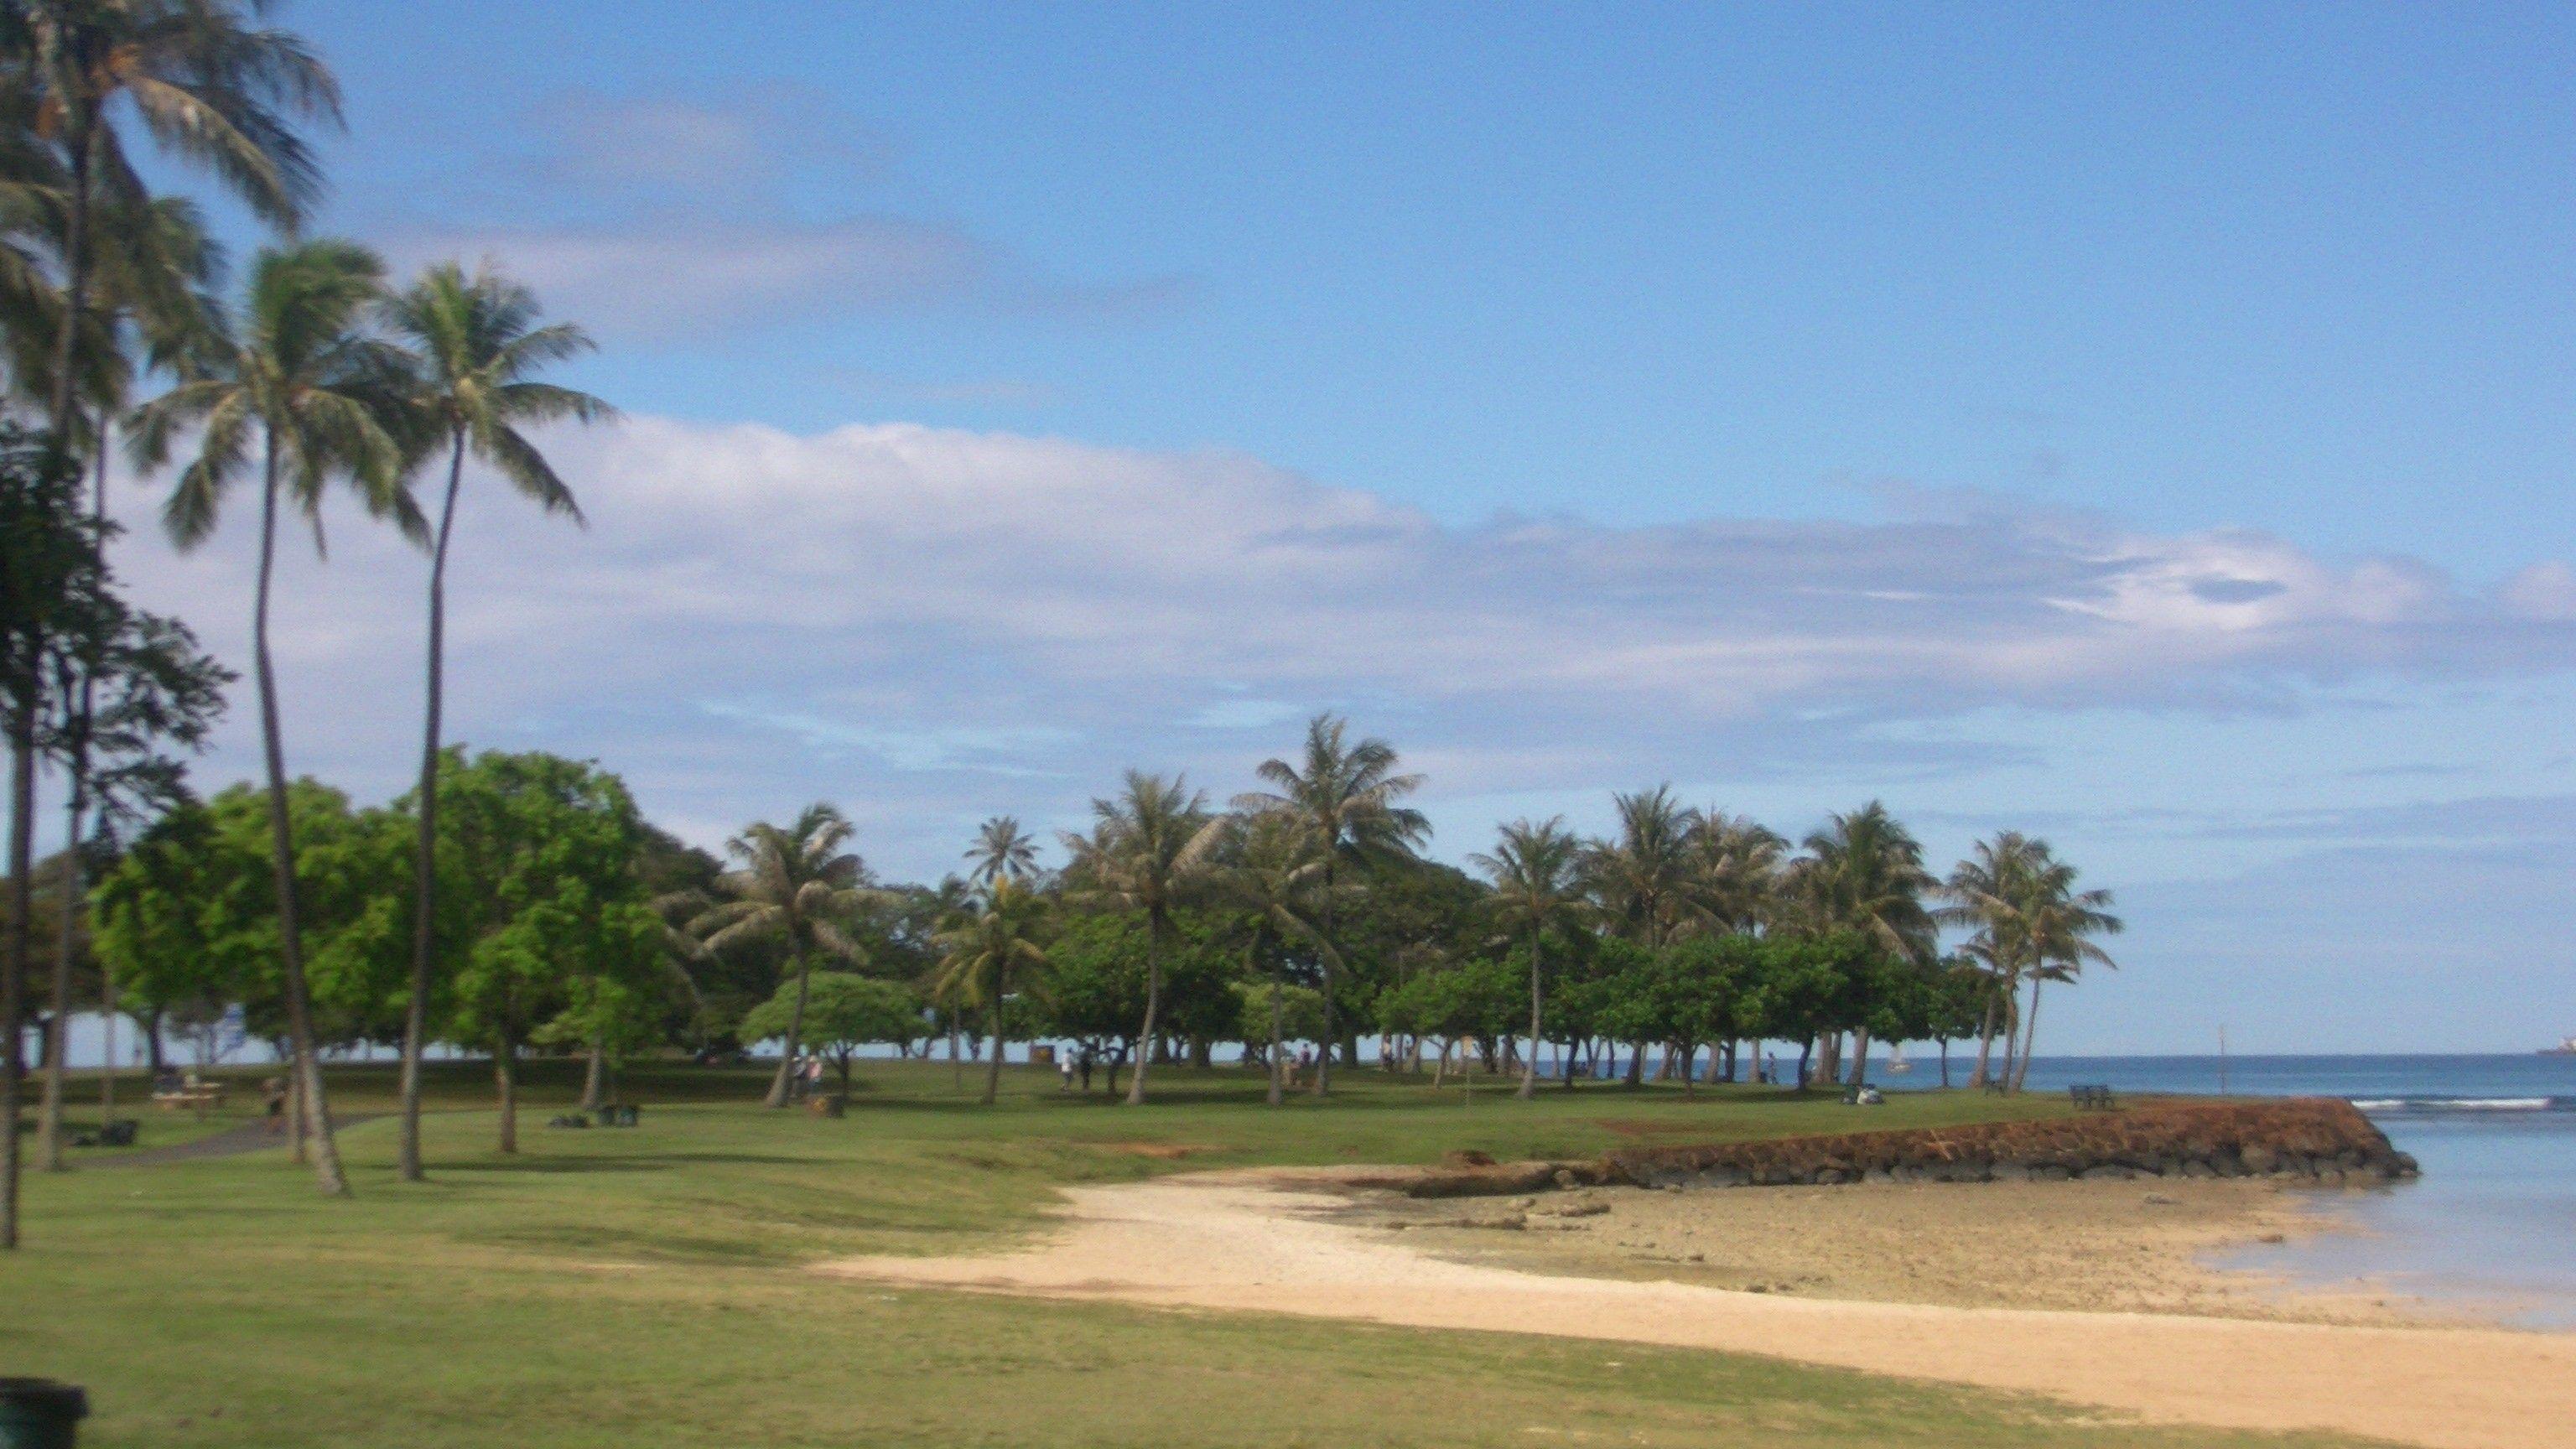 Beaches: Beach Park Pod Moana Palmtree Island Tree Ala Monkey Oahu